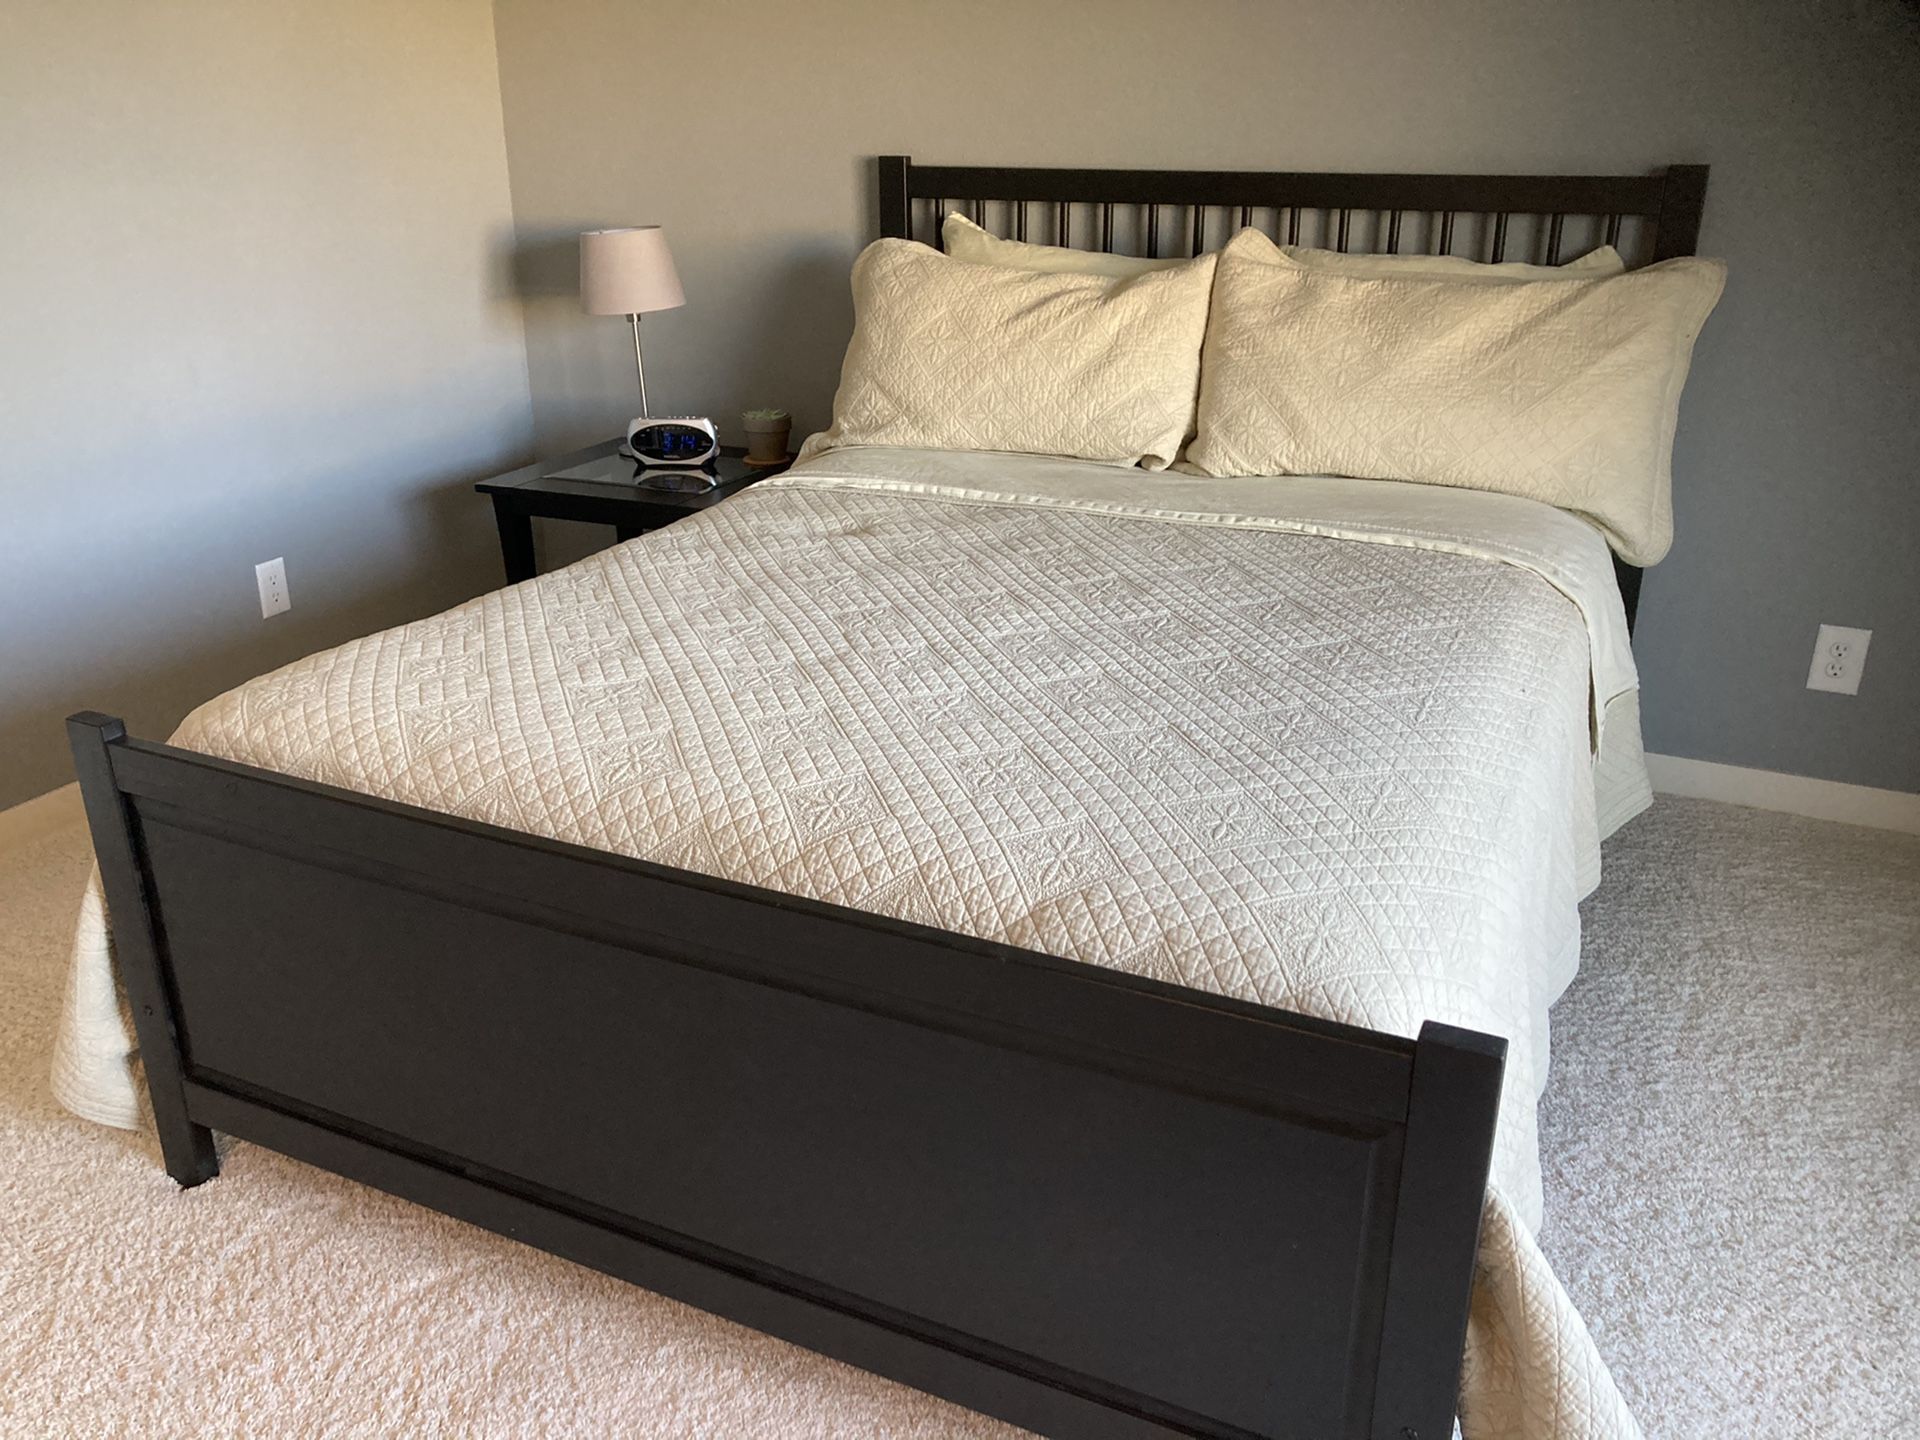 Bed + Frame +Linens (Full Size)